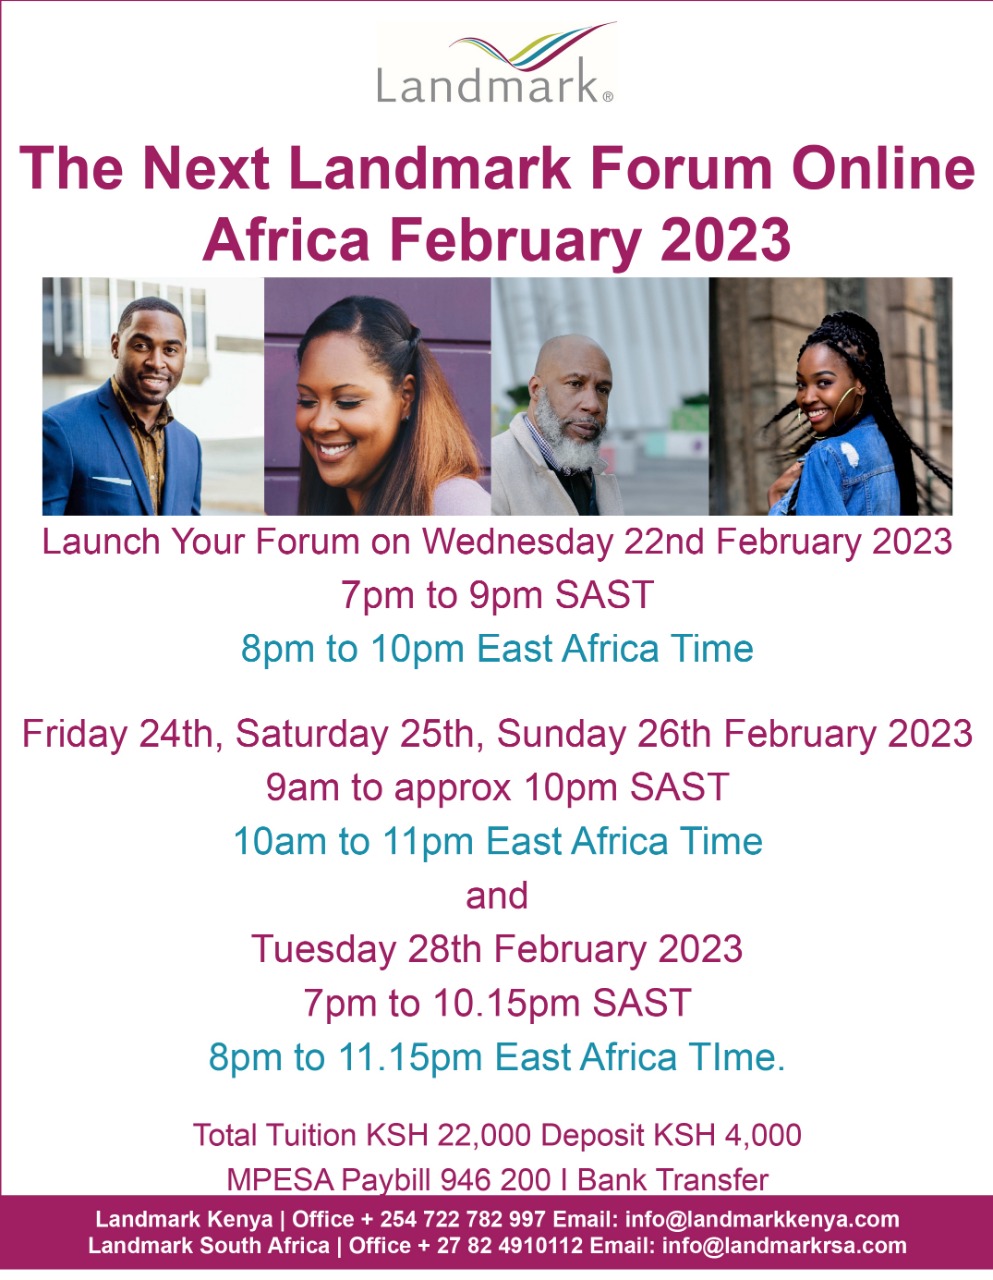 The Next Landmark Forum Online Africa